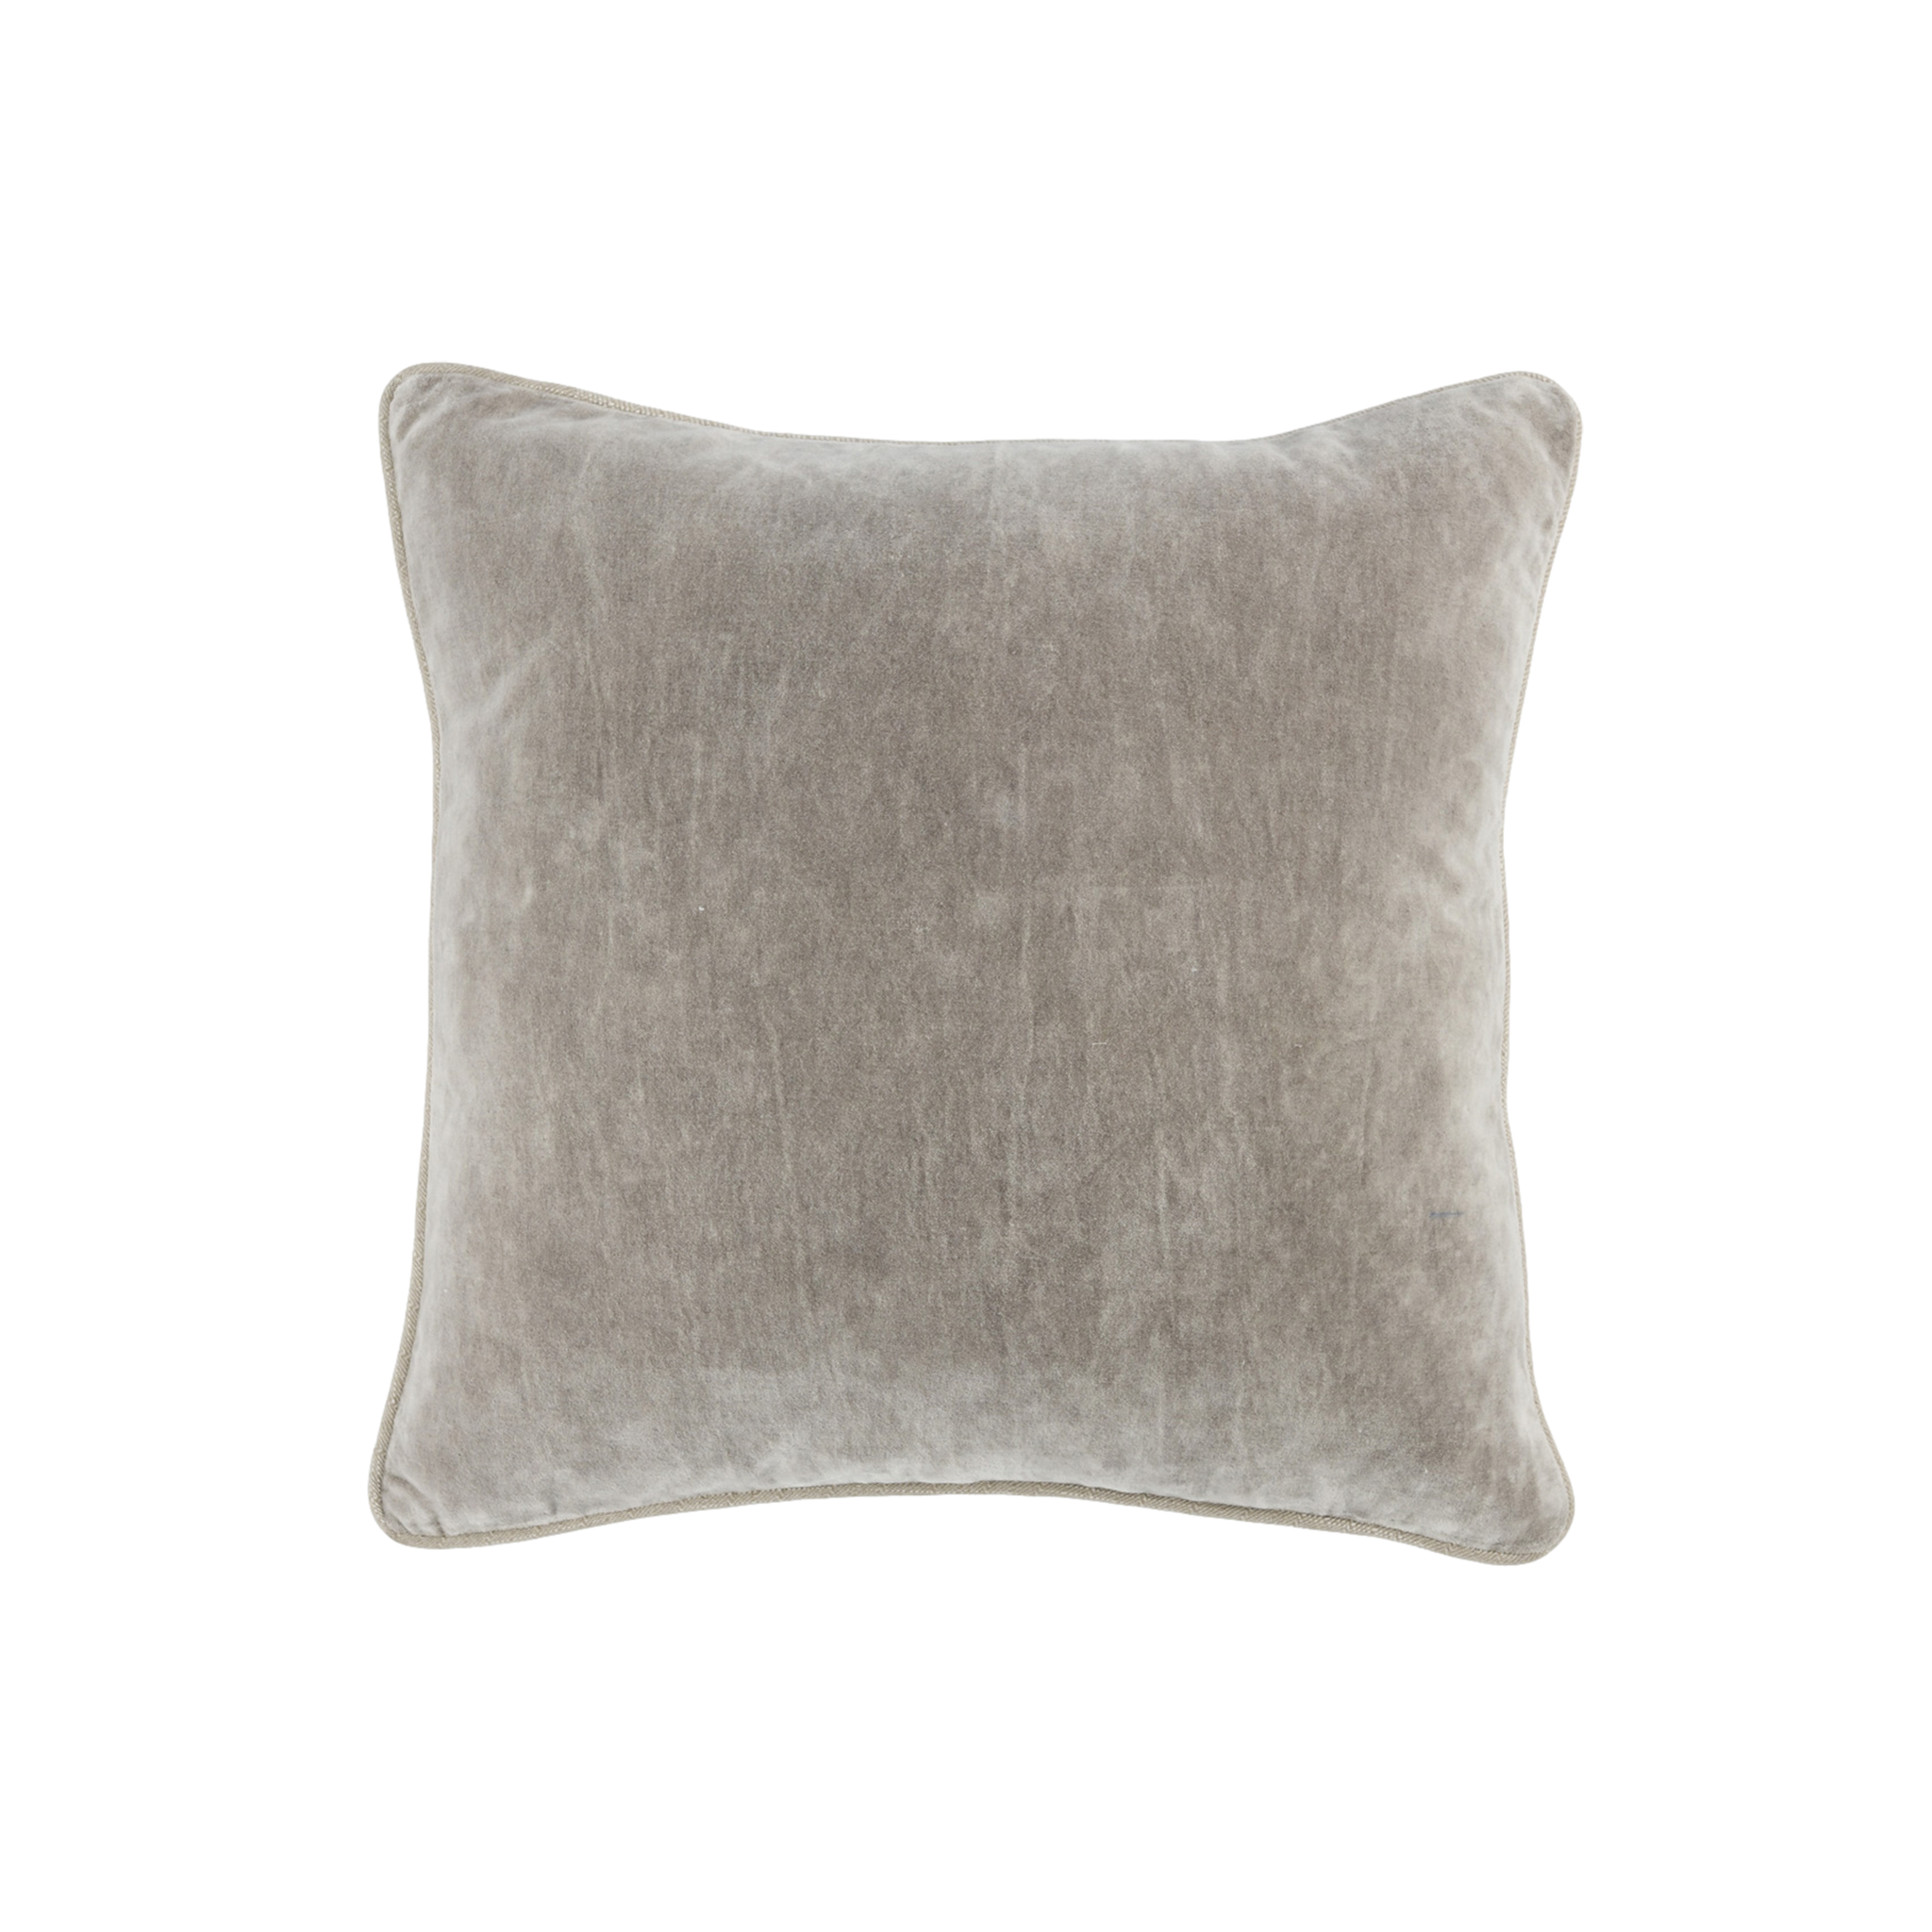 Heritage Textures Pillow Bundle